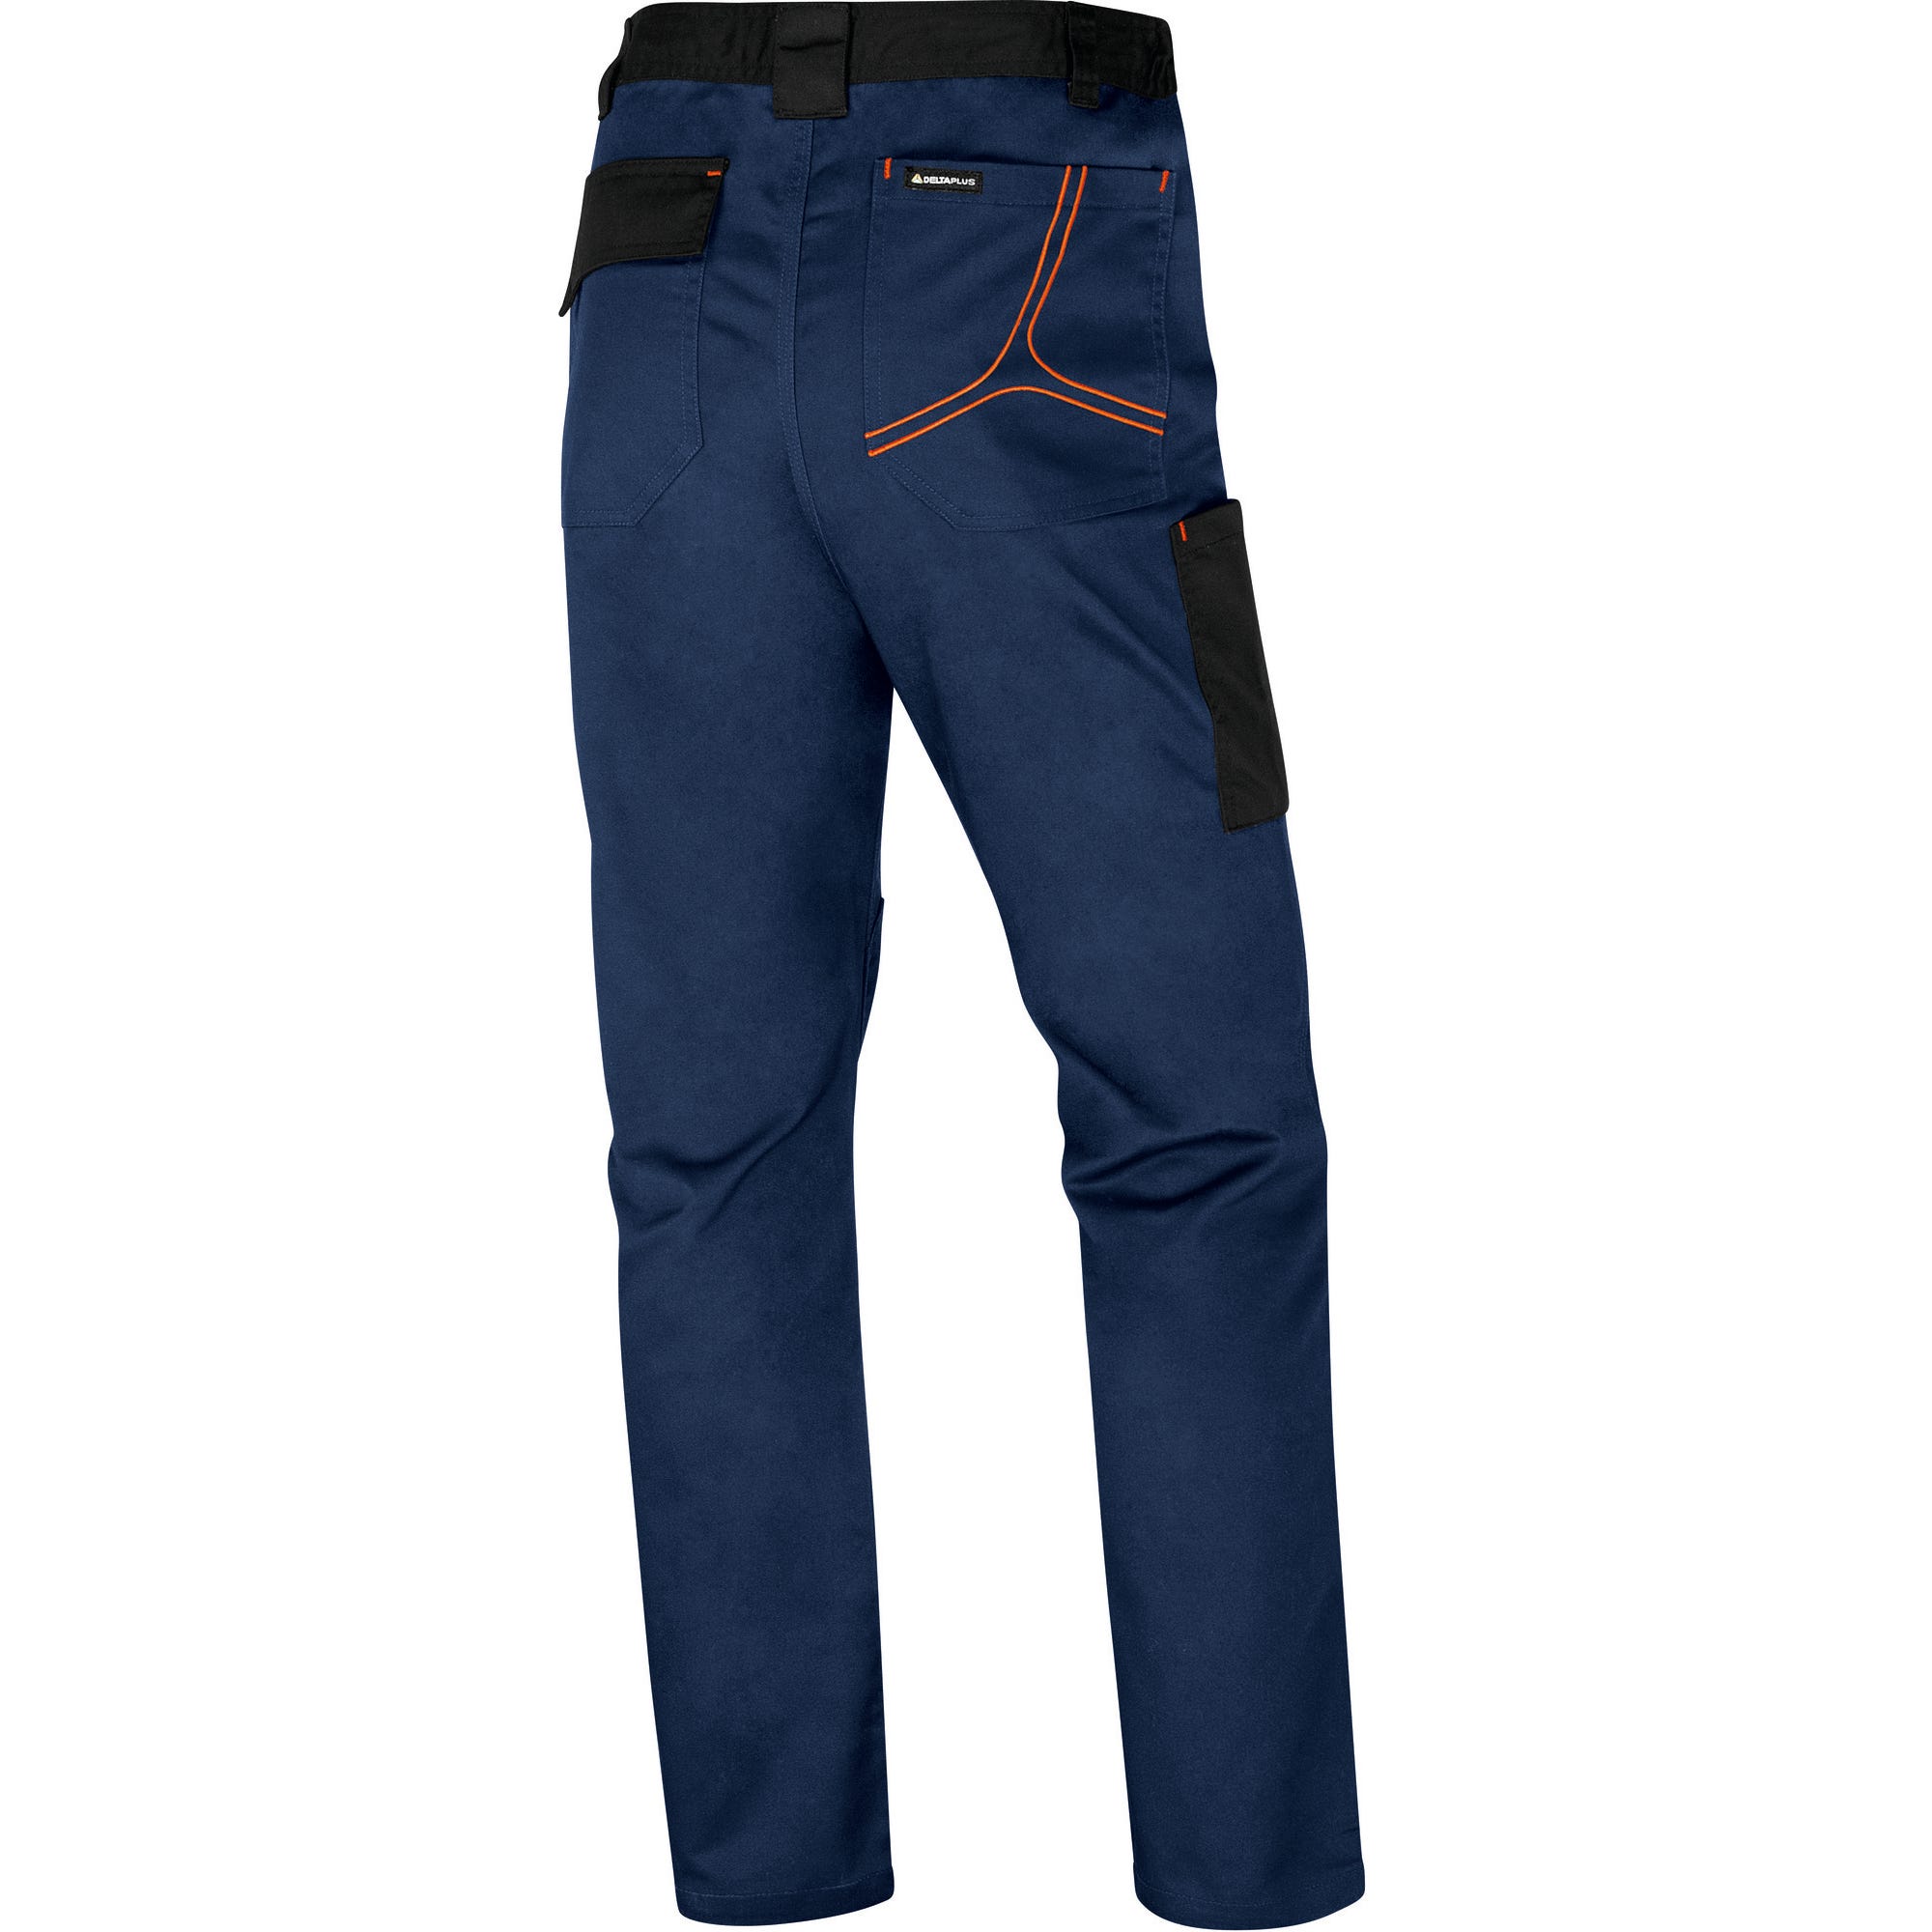 Pantalon de travail Marine/Orange T.L MACH2 - DELTA PLUS 0